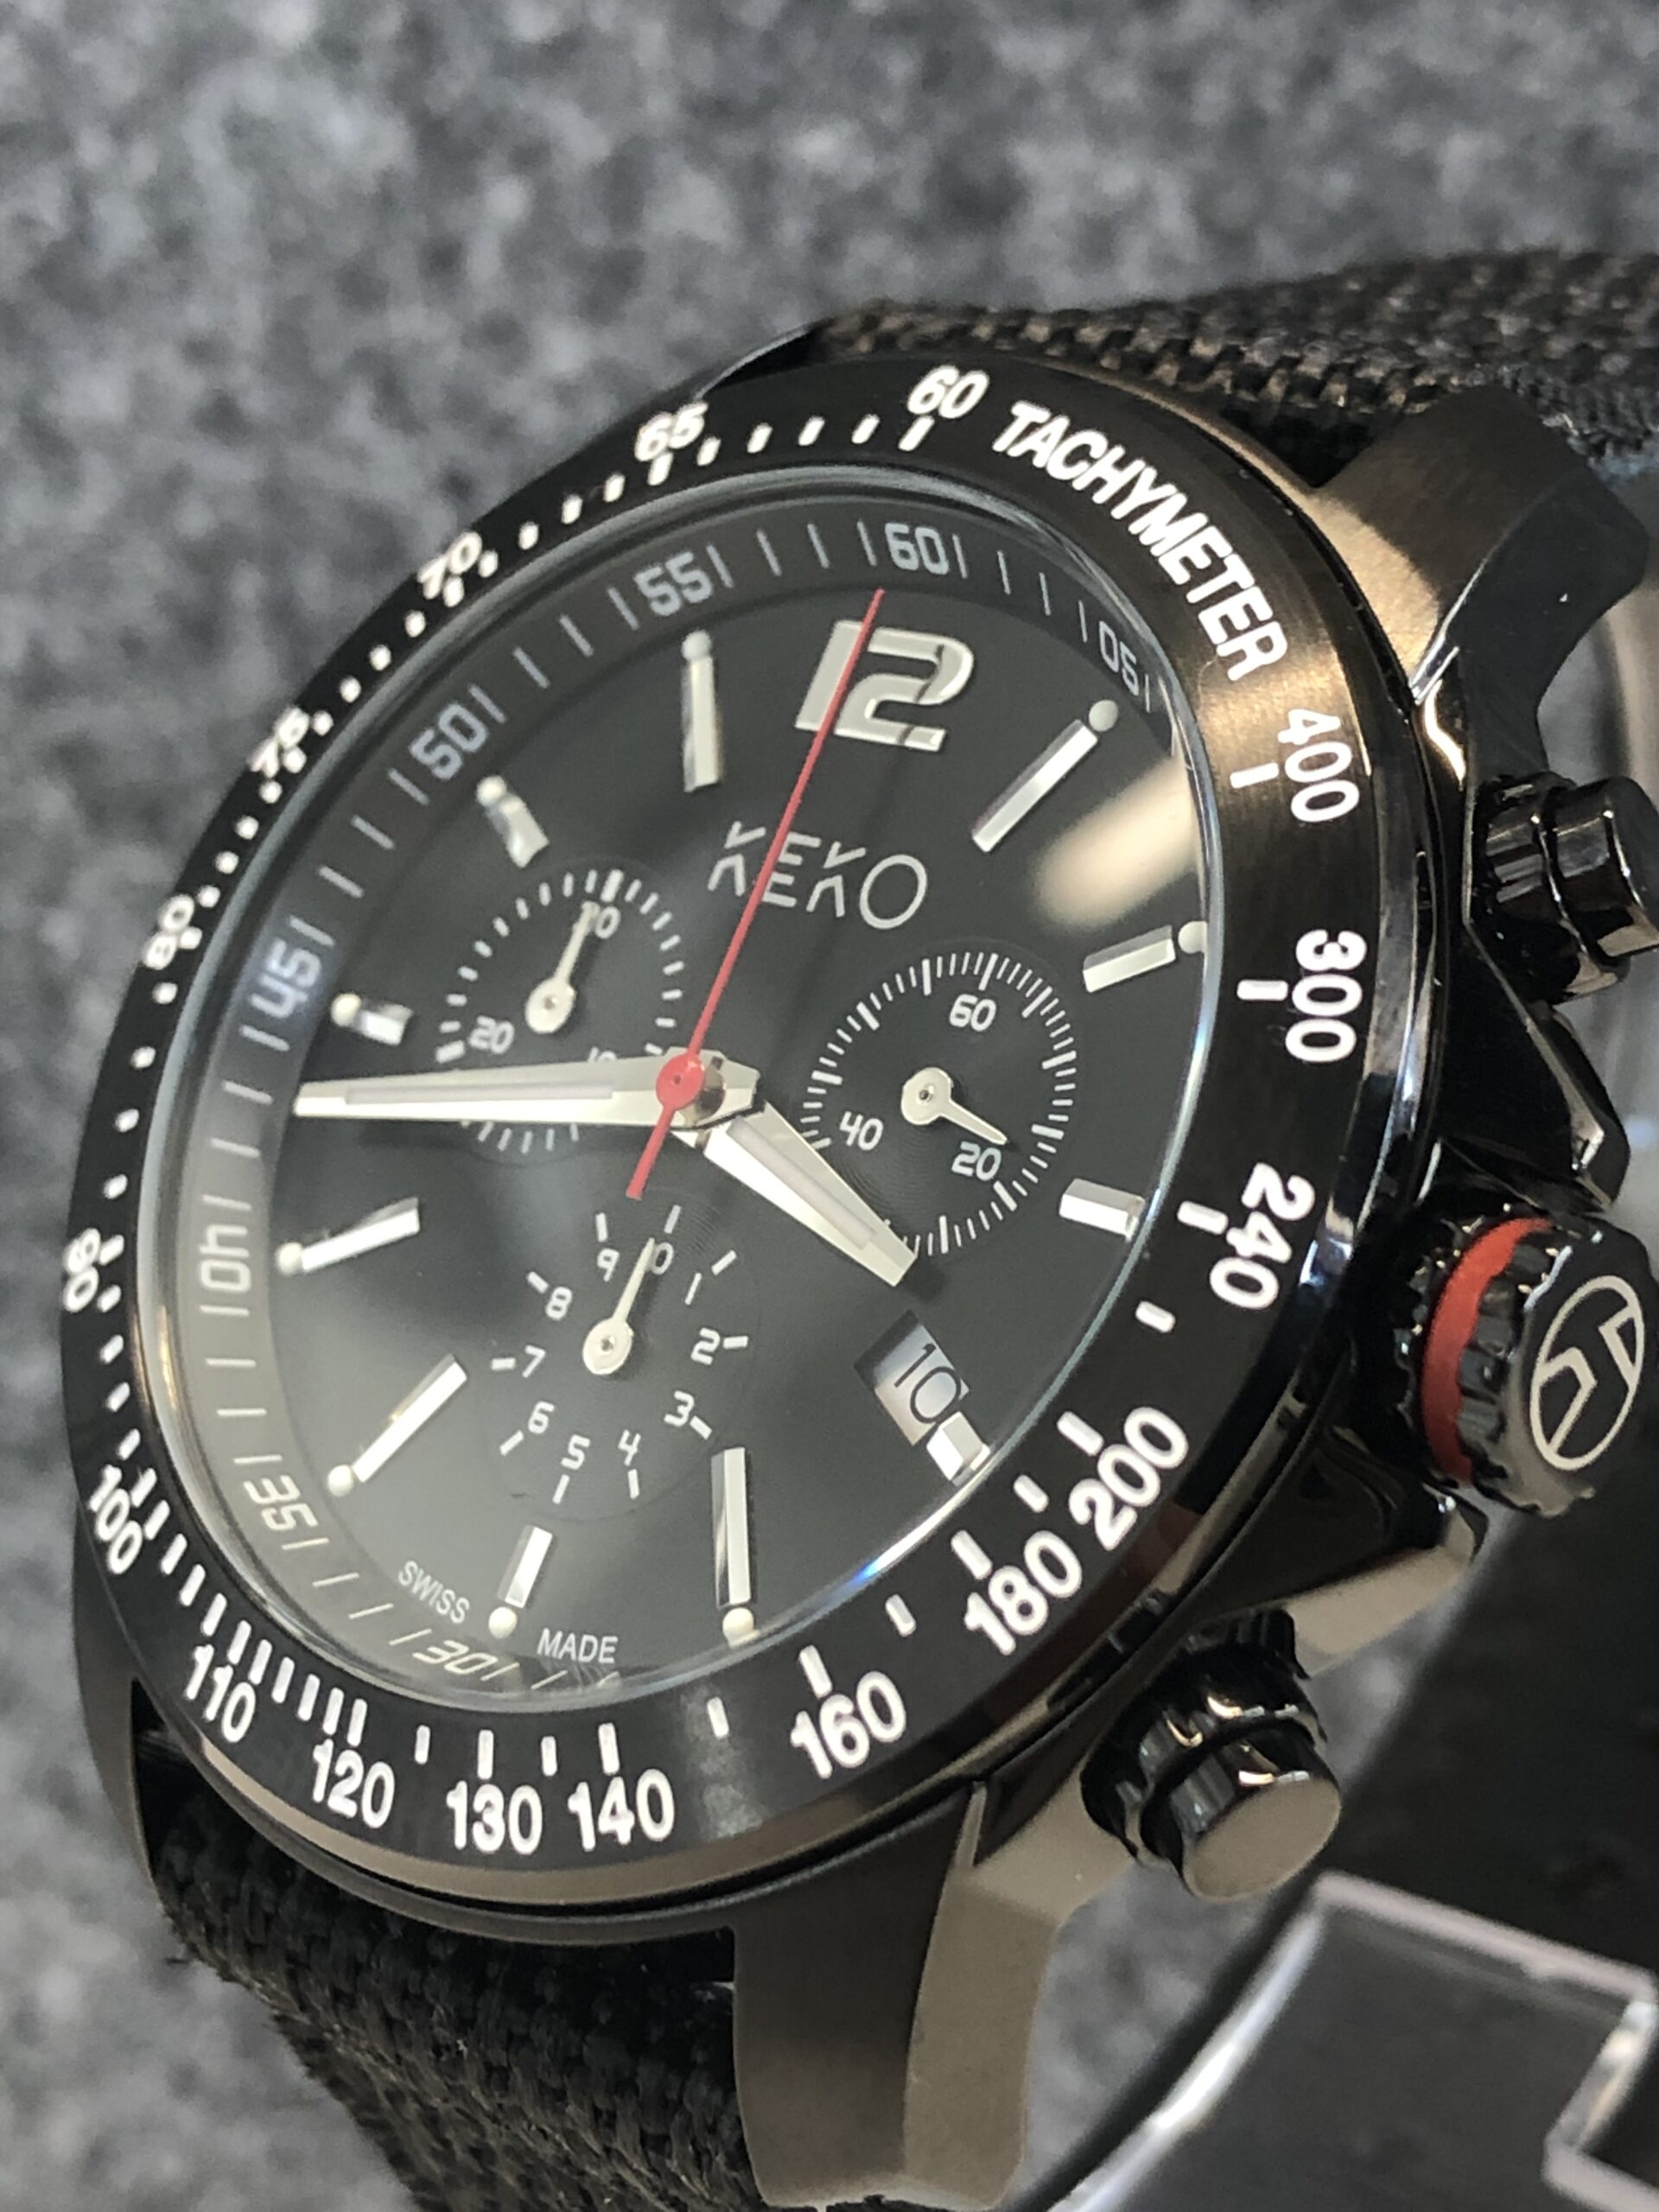 keko-chronograph-outdoor-adventure-mit-schwarzem-nylon-armband-seitenansicht-mit-krone